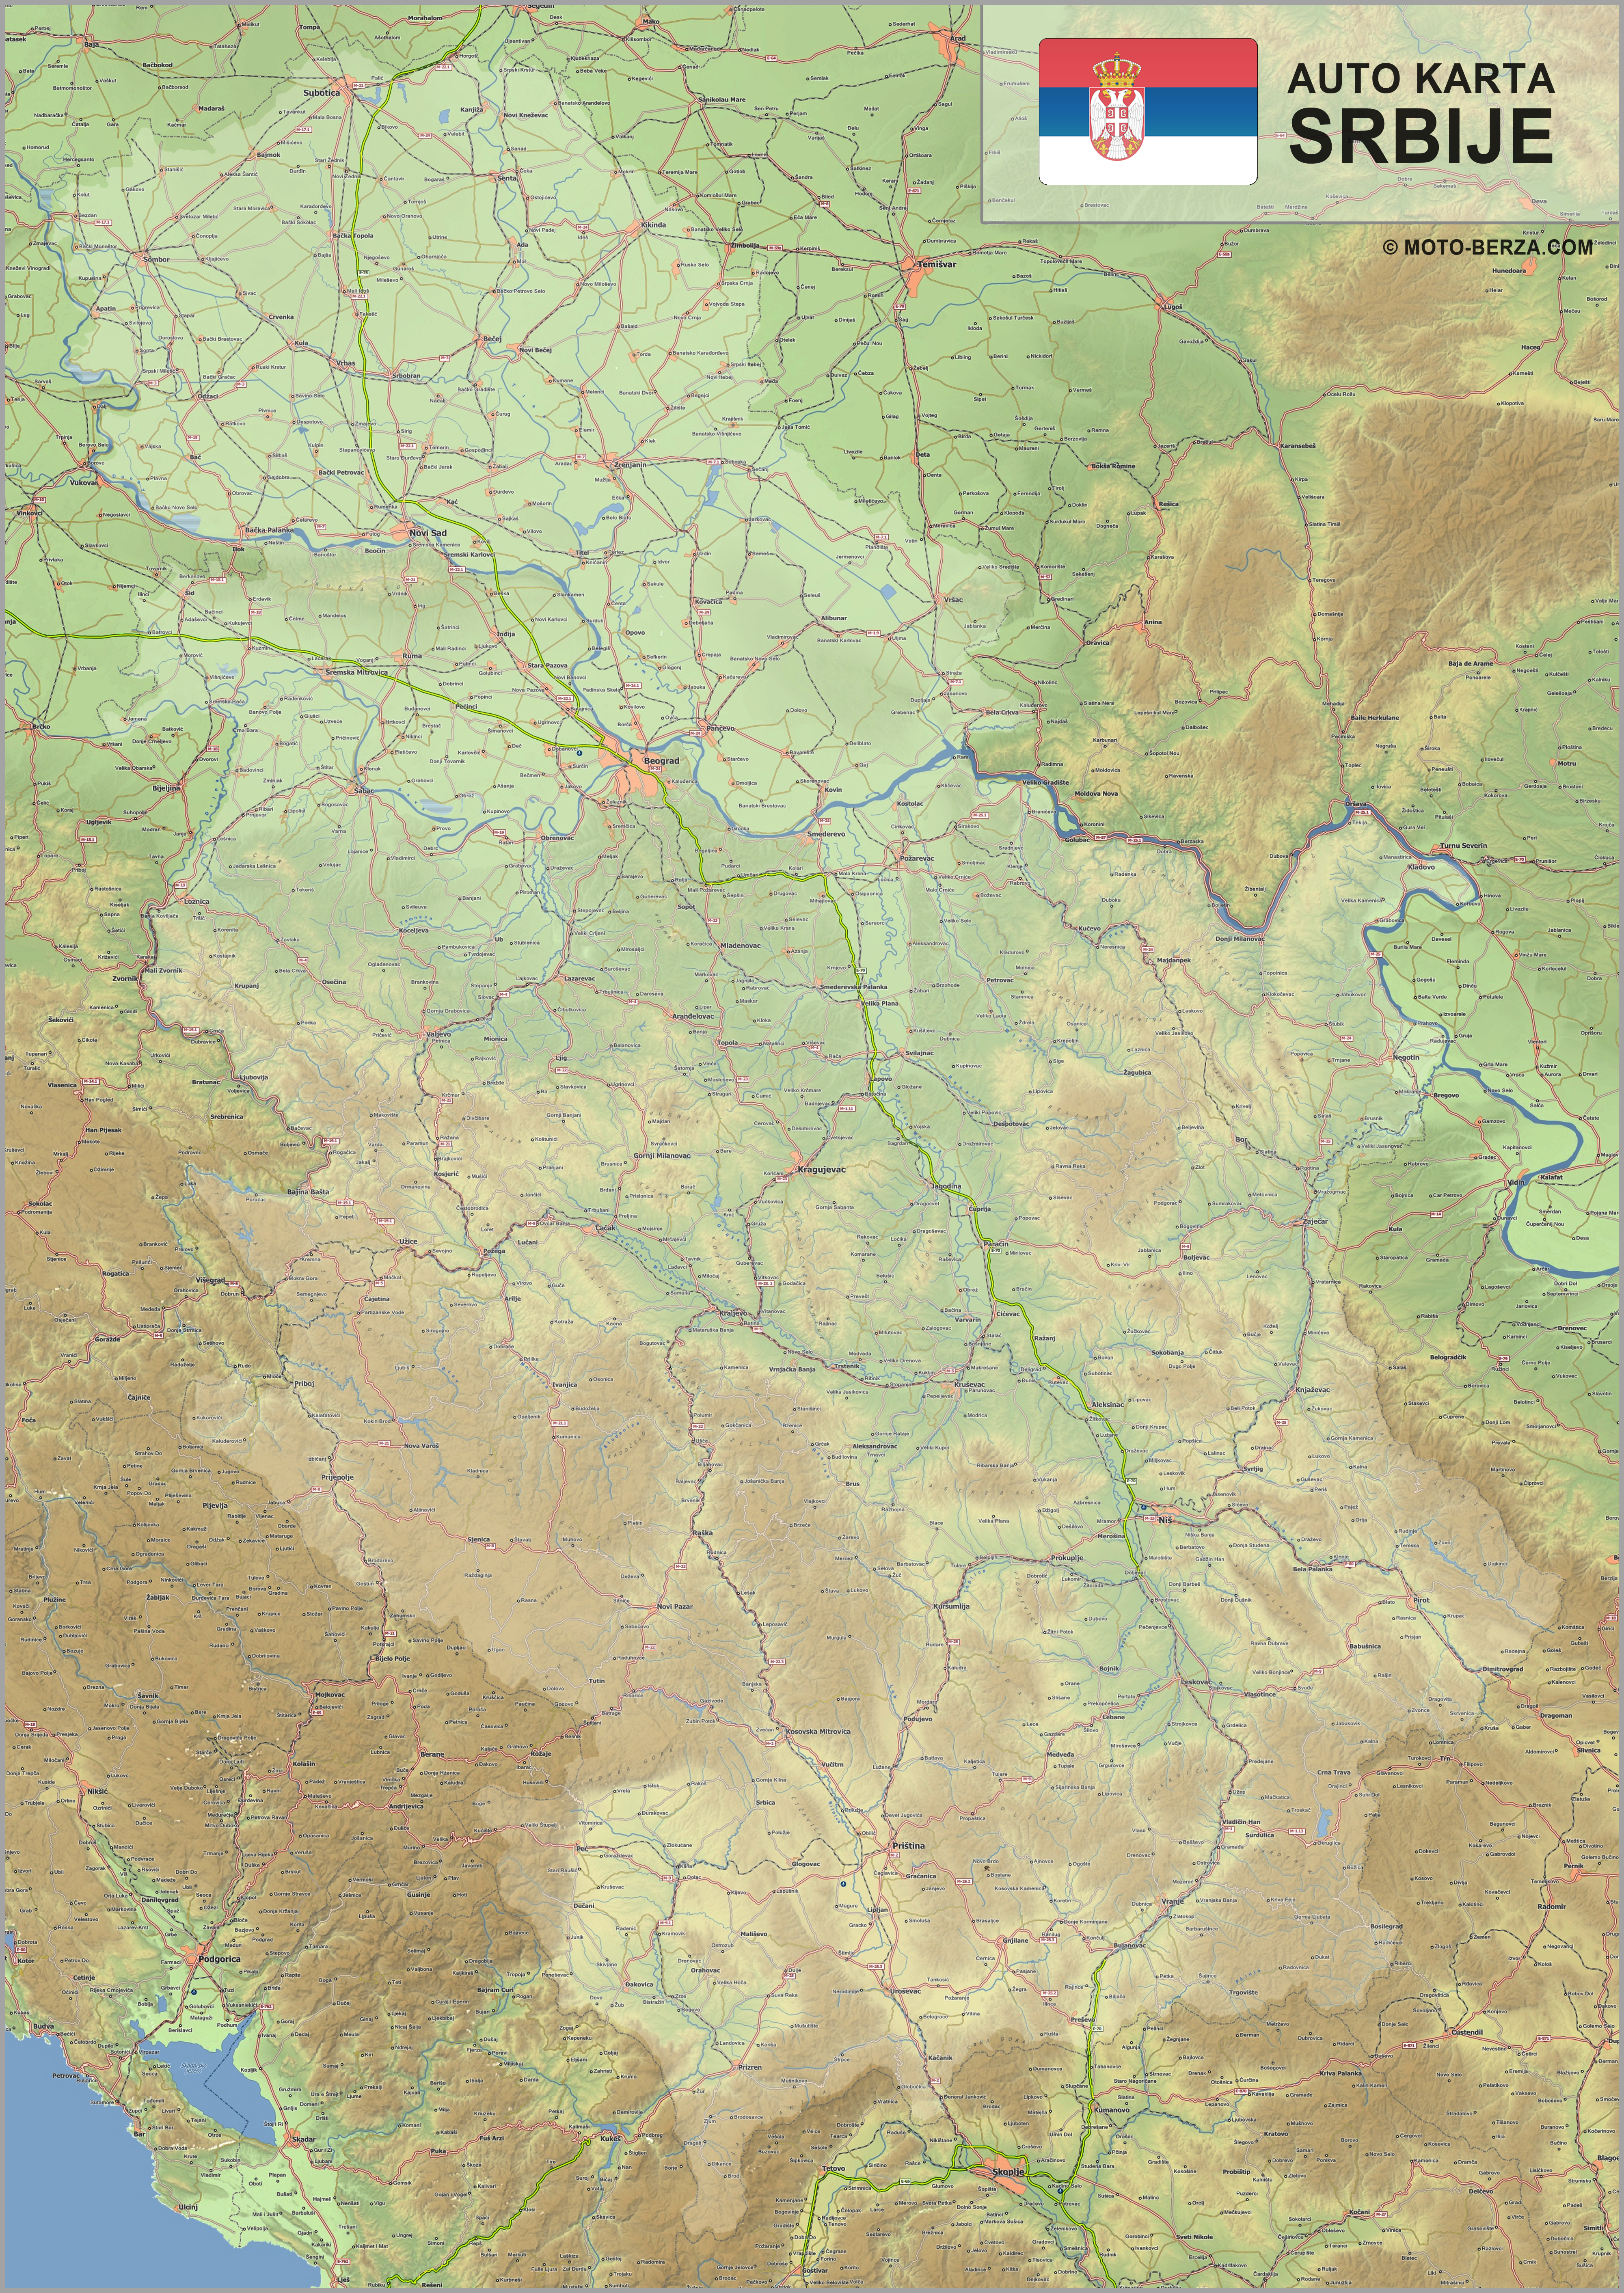 krnjevo karta Mapa srbije   Auto karta Srbije   Geografska karta sa putevima krnjevo karta